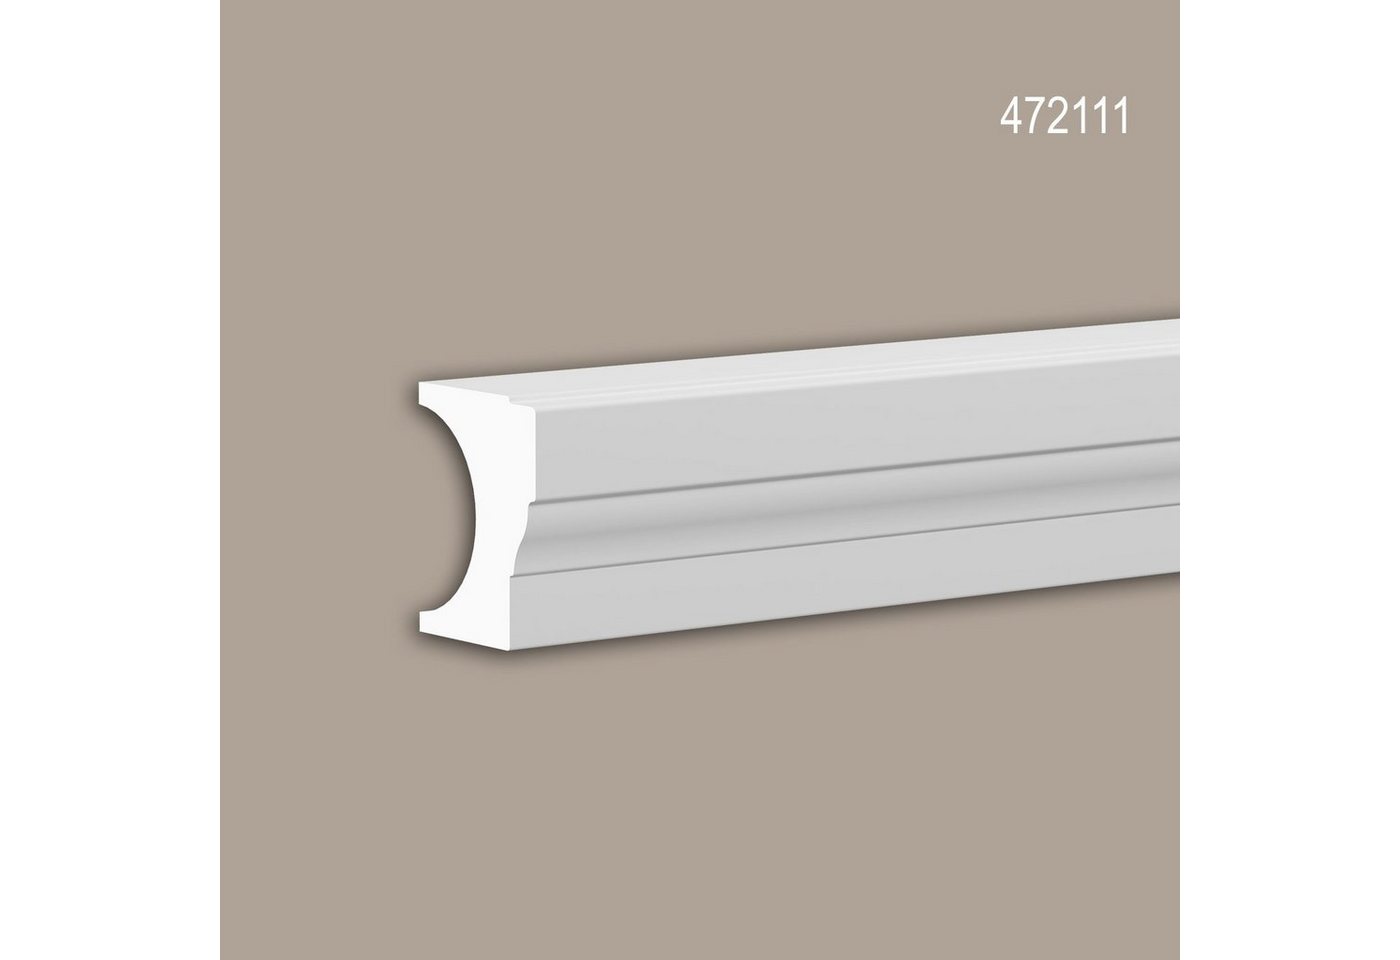 Profhome Wanddekoobjekt 472111 (Halbbalustrade Handlauf, 1 St., Außenstuck, Balustrade, Fassadenelement, Länge 3 m), weiß, vorgrundiert, für Fassadendekoration, Stil: Neo-Klassizismus von Profhome